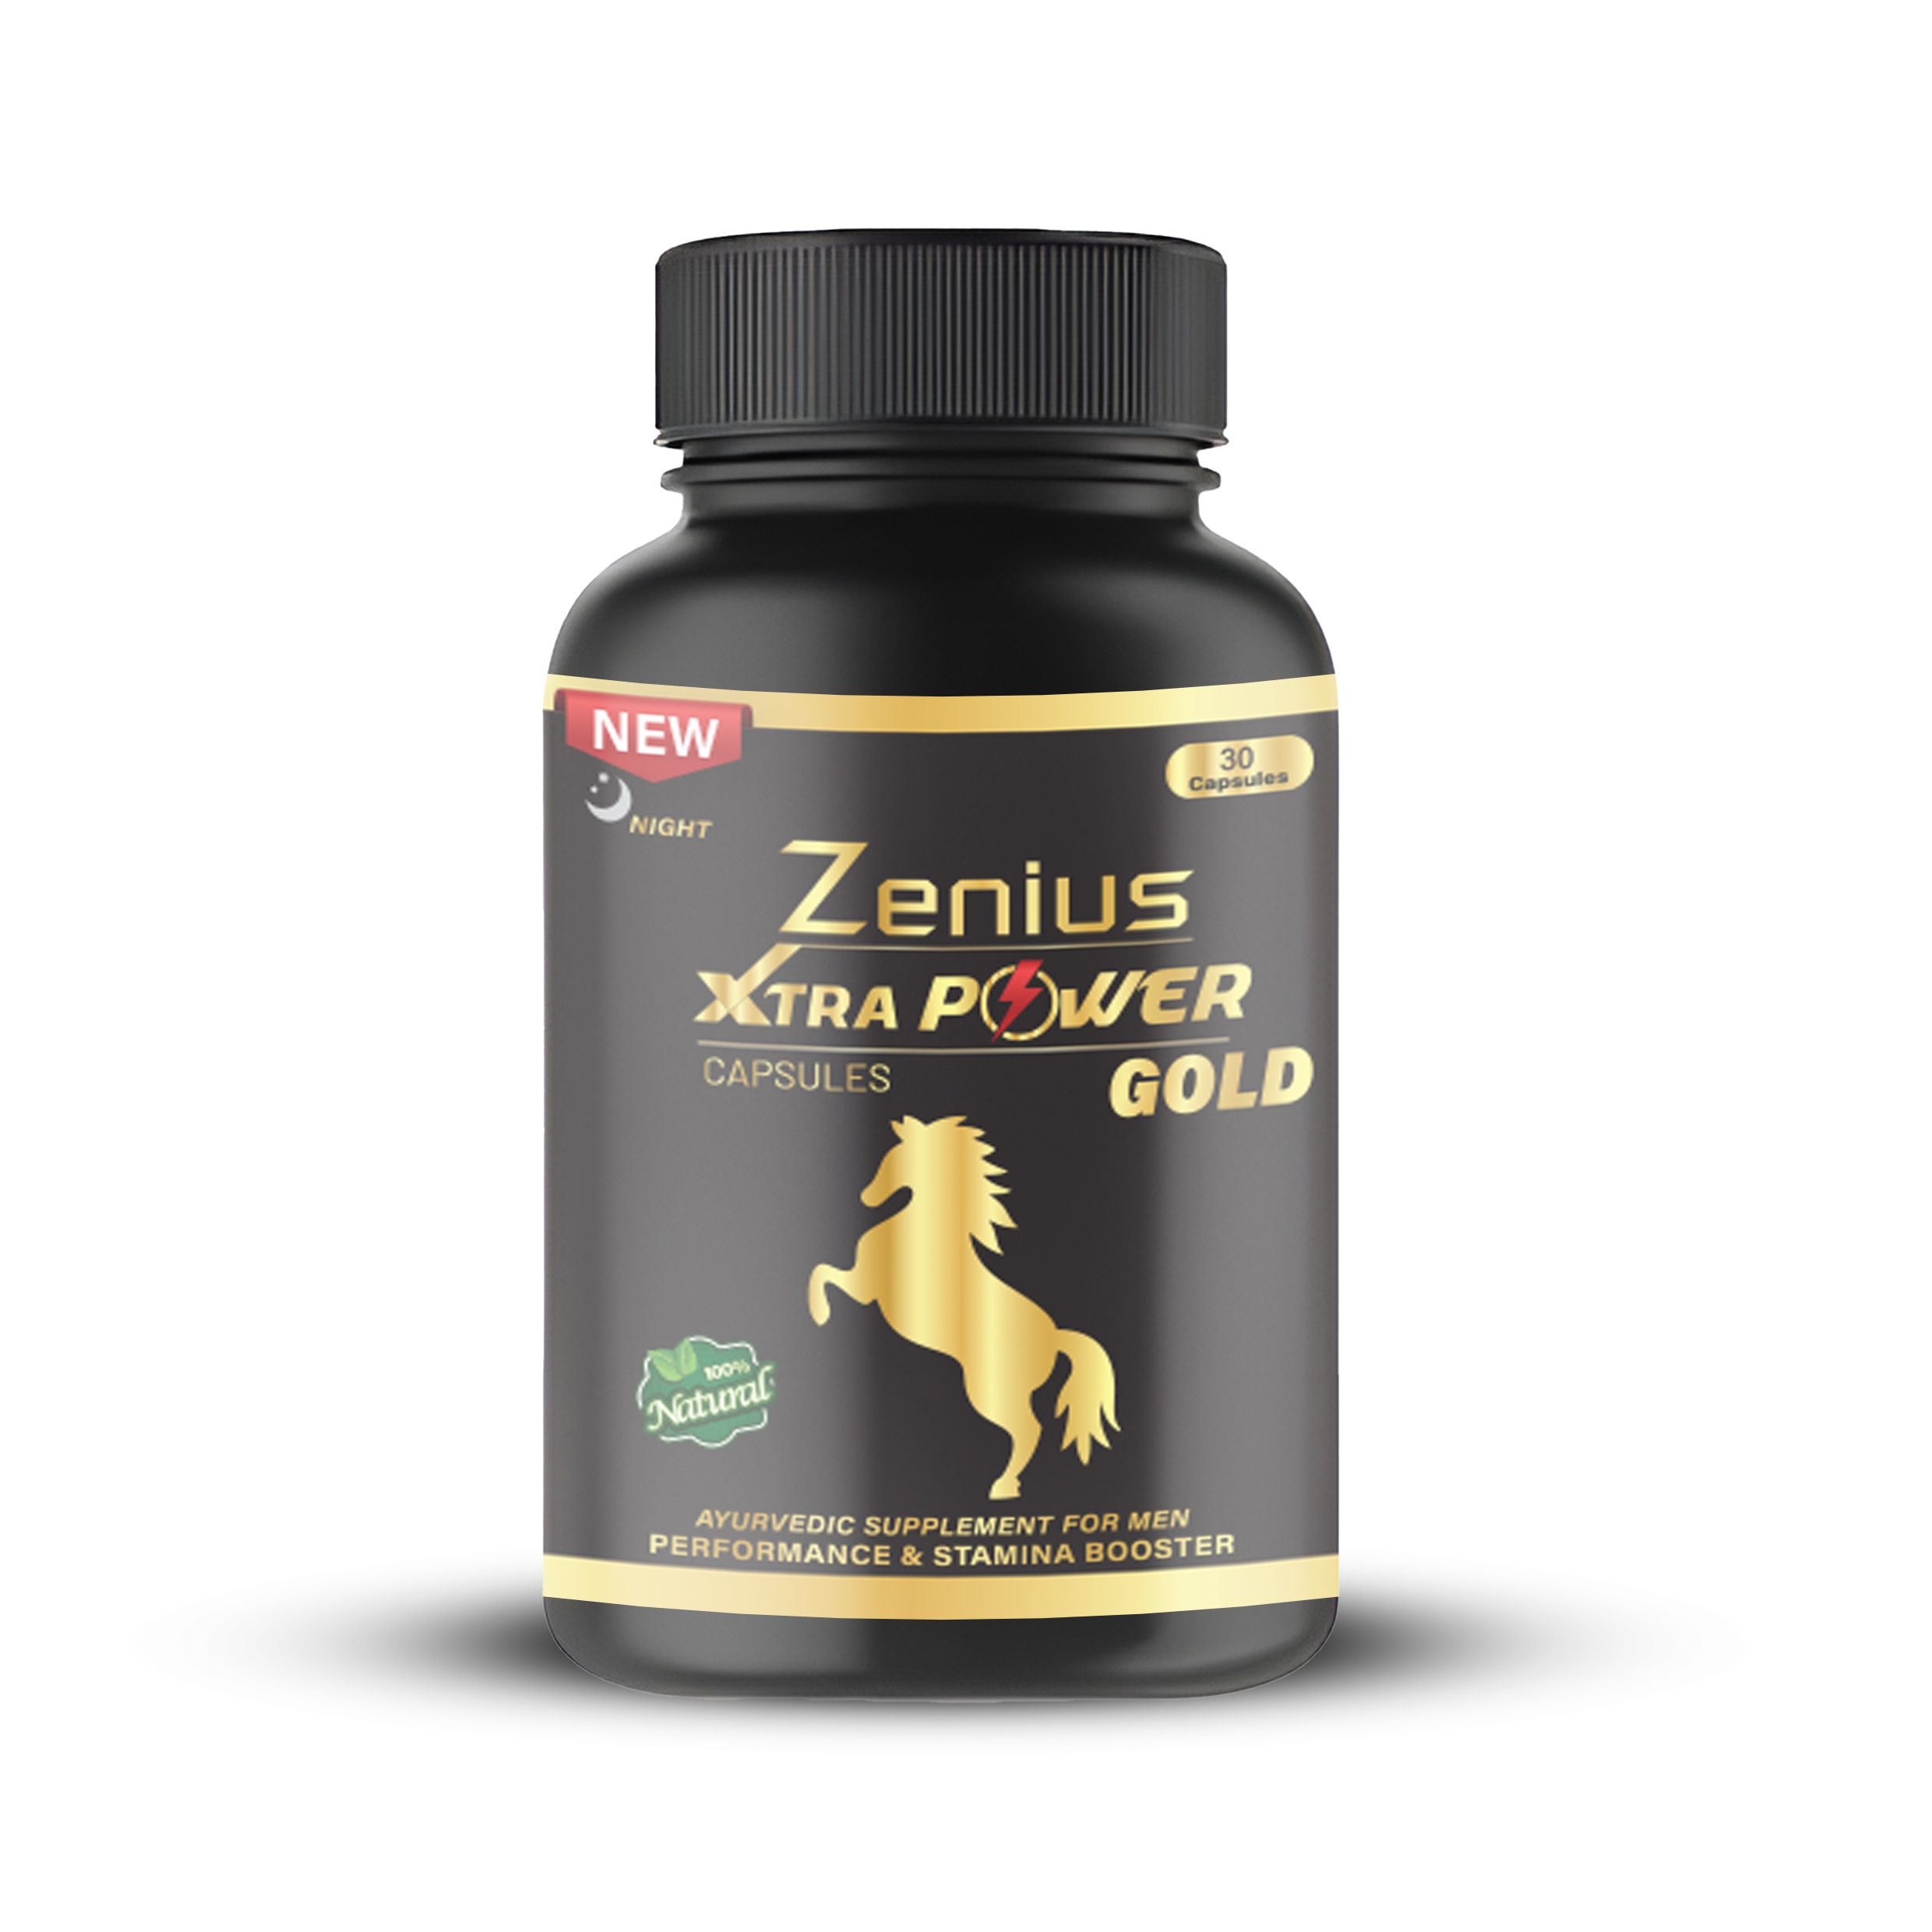 Zenius Xtar Power Gold Capsule_E